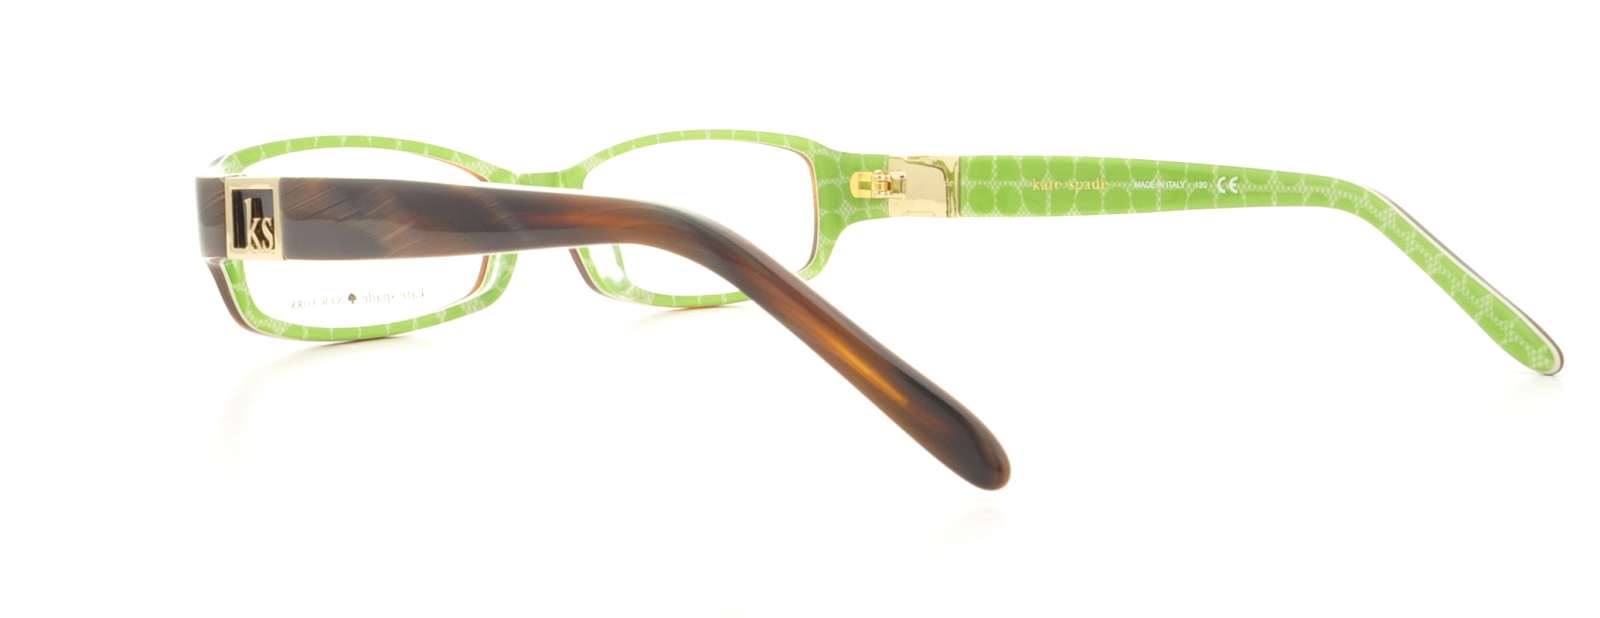 Designer Frames Outlet Kate Spade Eyeglasses Florence